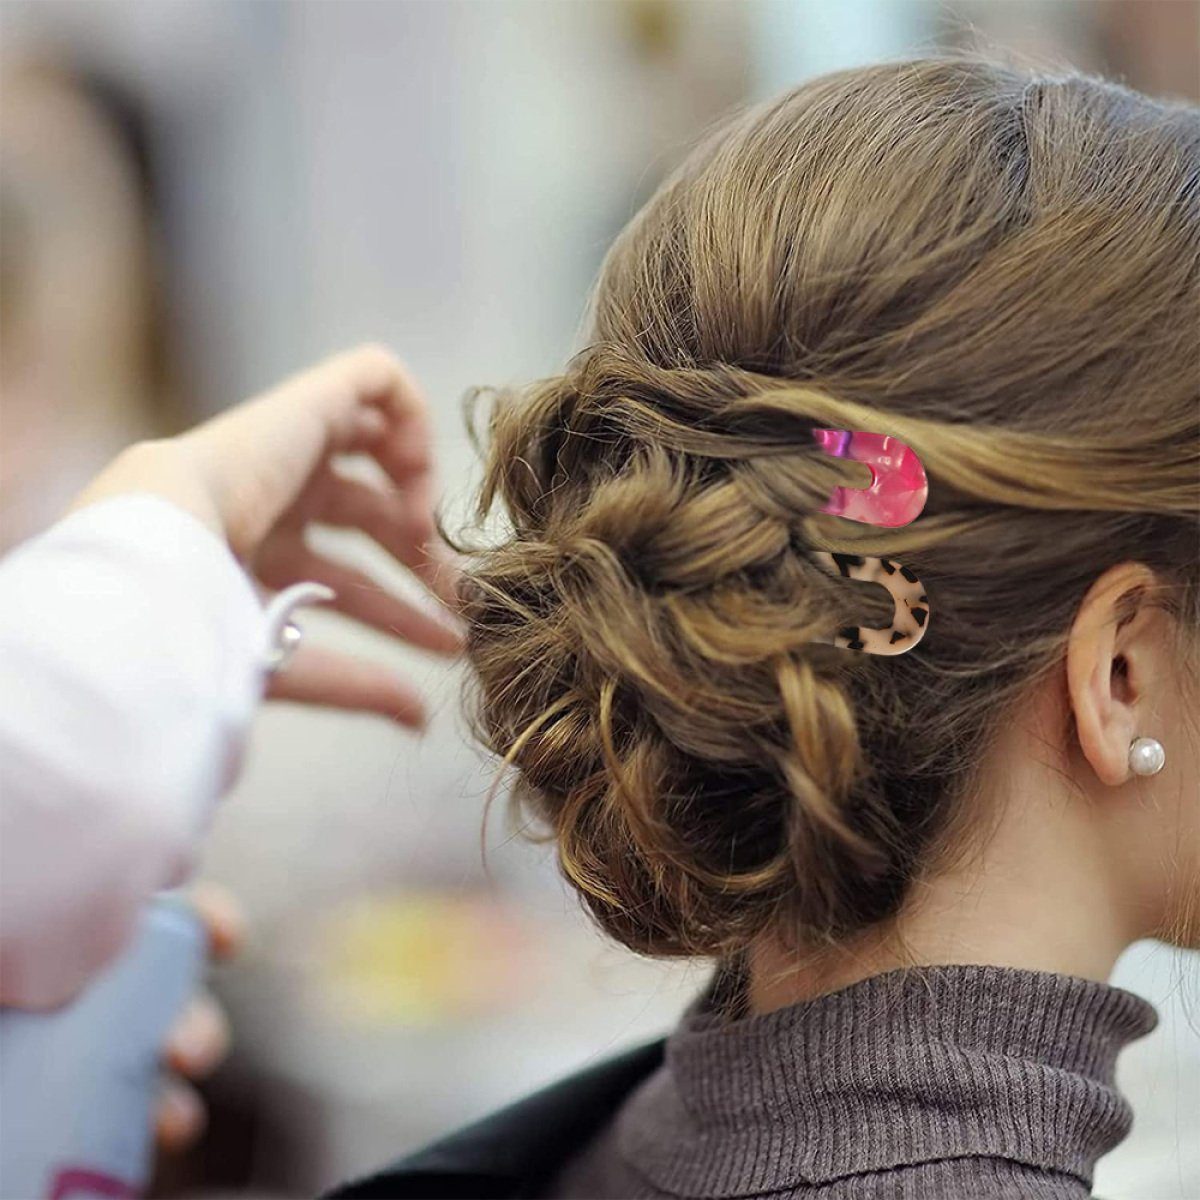 Jormftte Haarnadeln U-förmige Haarnadel,Französisch Mehrfarbig1 Stil Haarstyling Frauen Haarspange,für